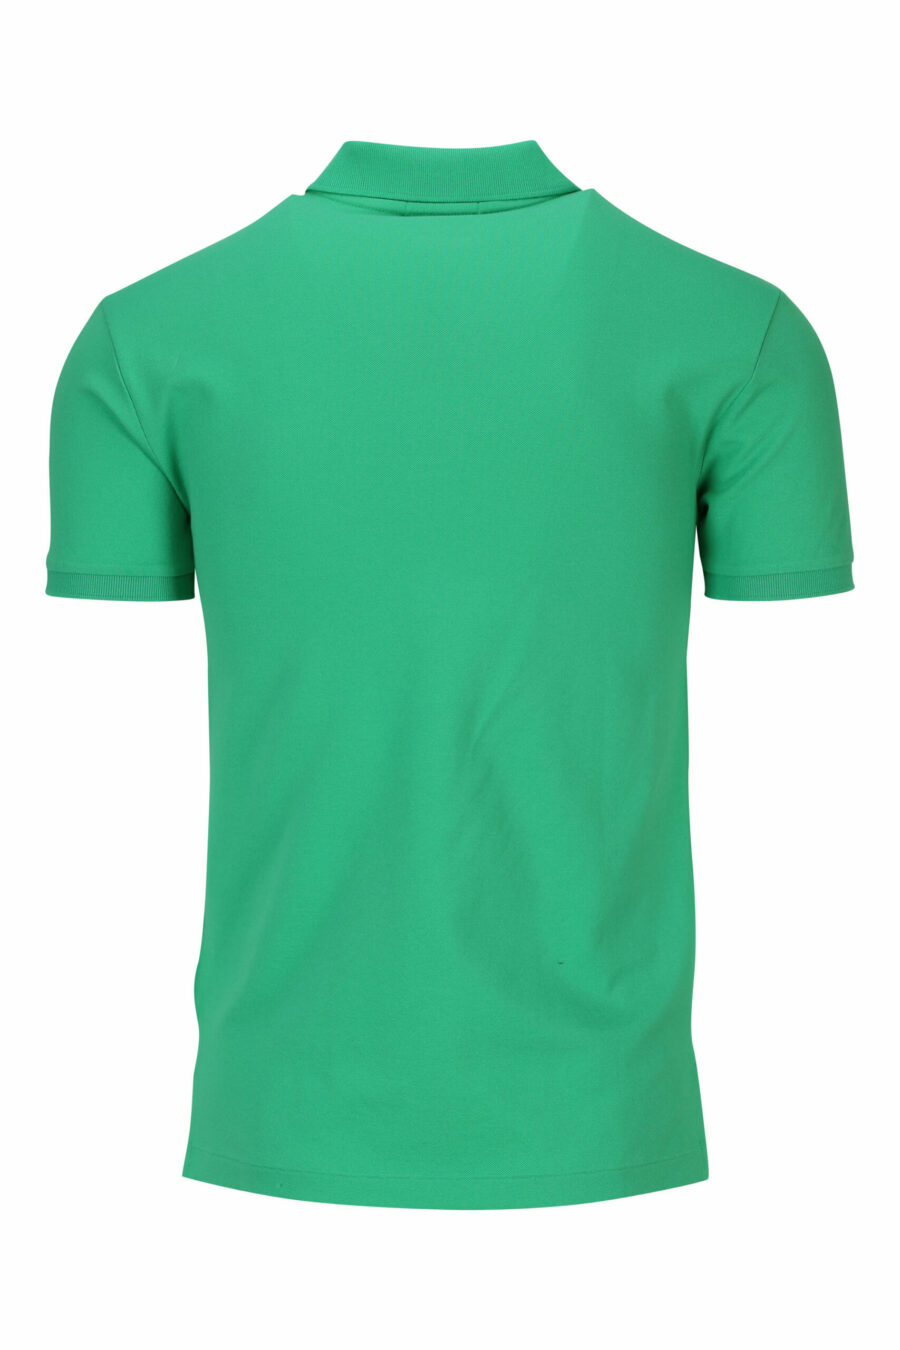 T-shirt vert et bleu avec mini-logo "polo" - 3616535909687 1 à l'échelle